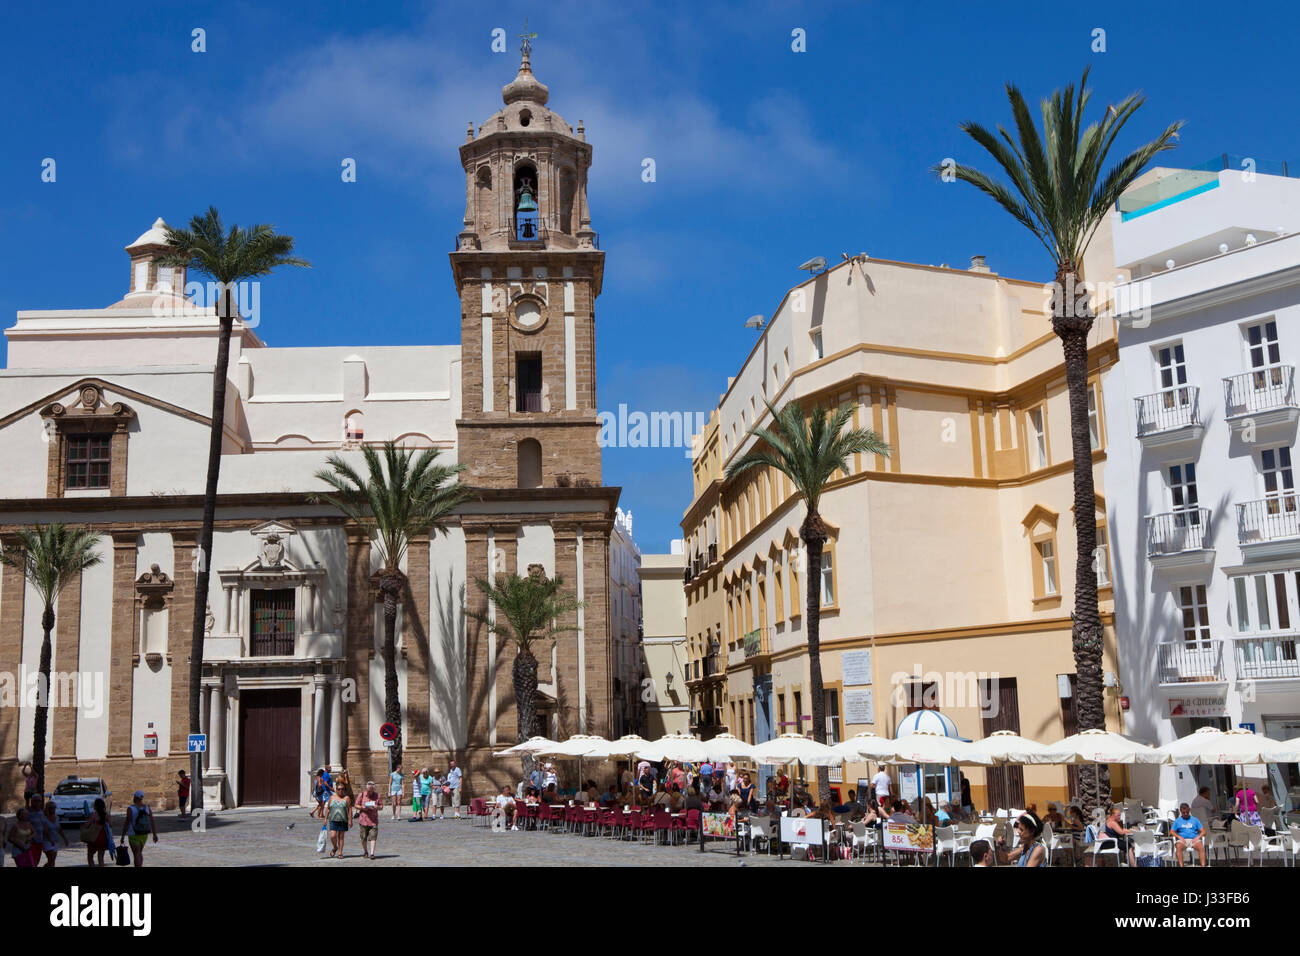 La Plaza de la Catedral, la plaza de la Catedral con la Catedral en el casco histórico de la ciudad de Cádiz, Cádiz, Andalucía, España, Europa Foto de stock